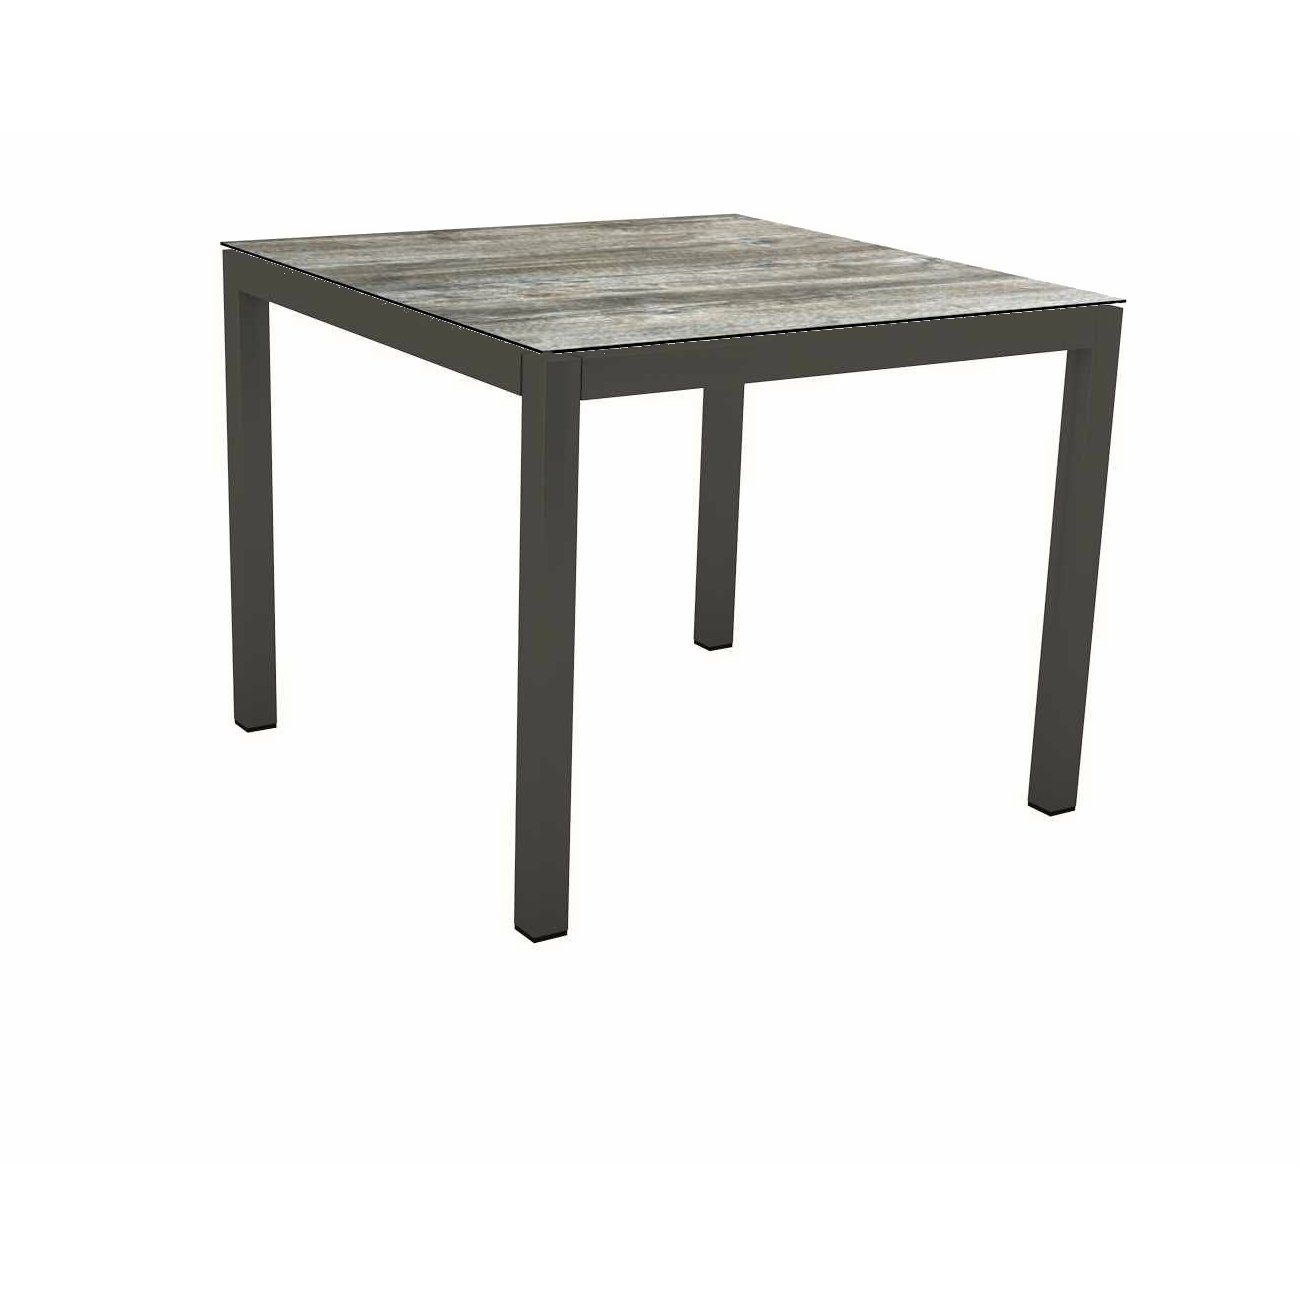 Stern Tischsystem Gartentisch, Gestell Aluminium anthrazit, Tischplatte HPL Tundra grau, Maße: 80x80 cm